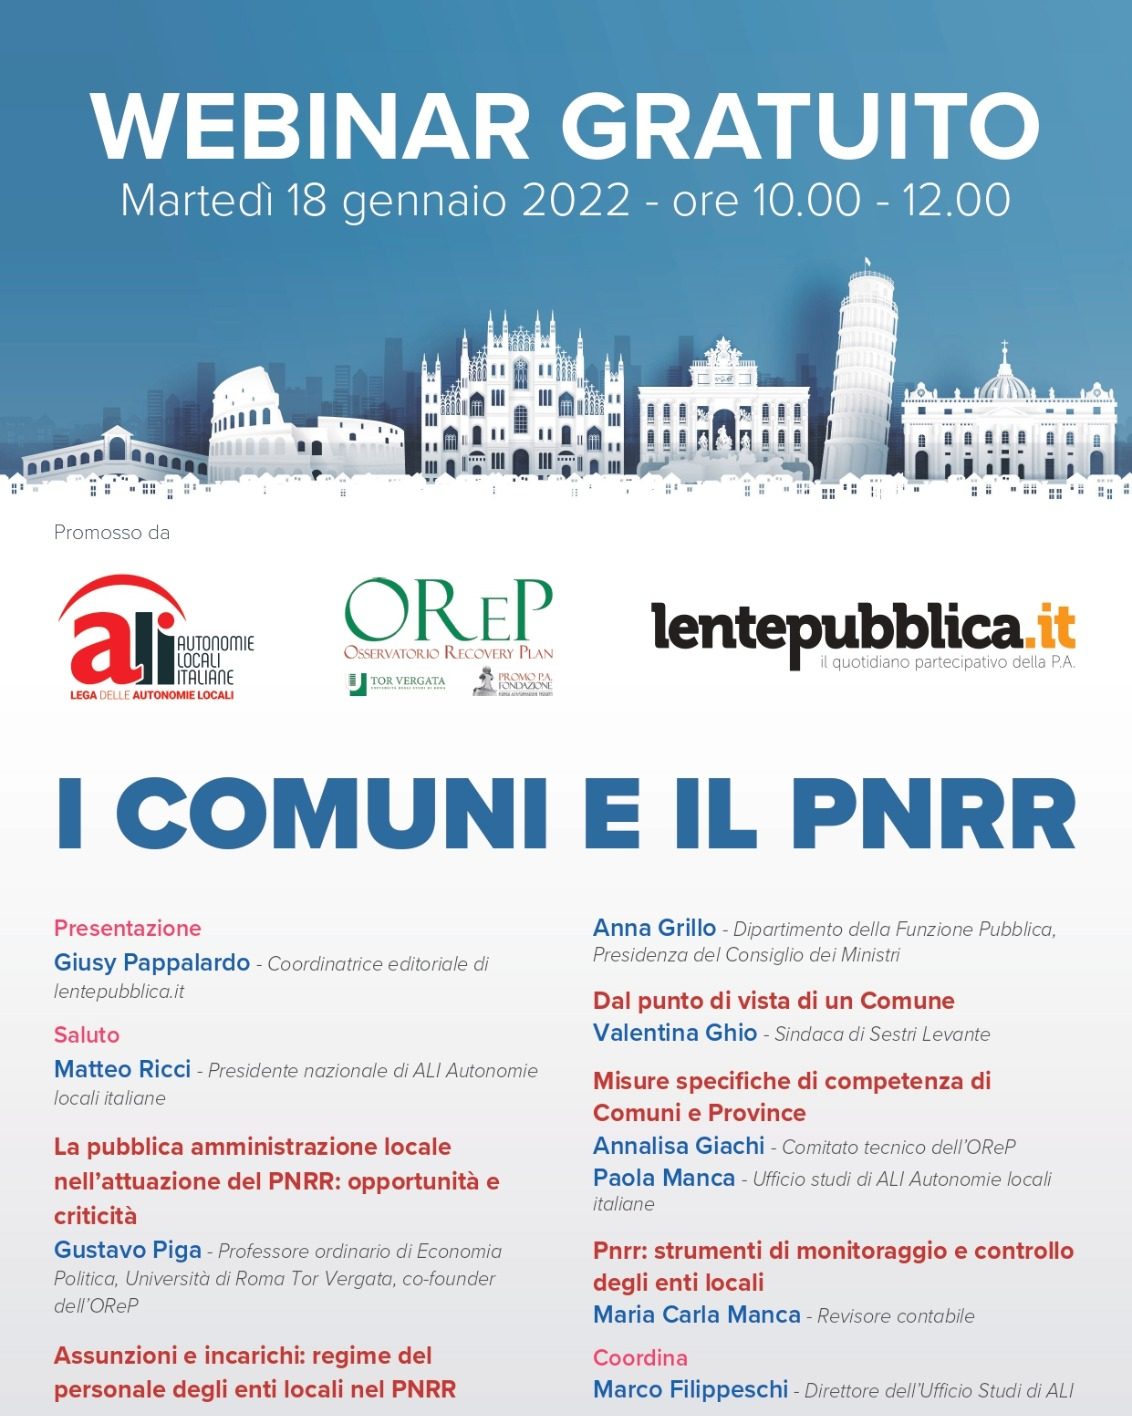 COMUNI E PNRR. Ali e lentepubblica, con l’OReP, webinar gratuito, martedì 18 gennaio